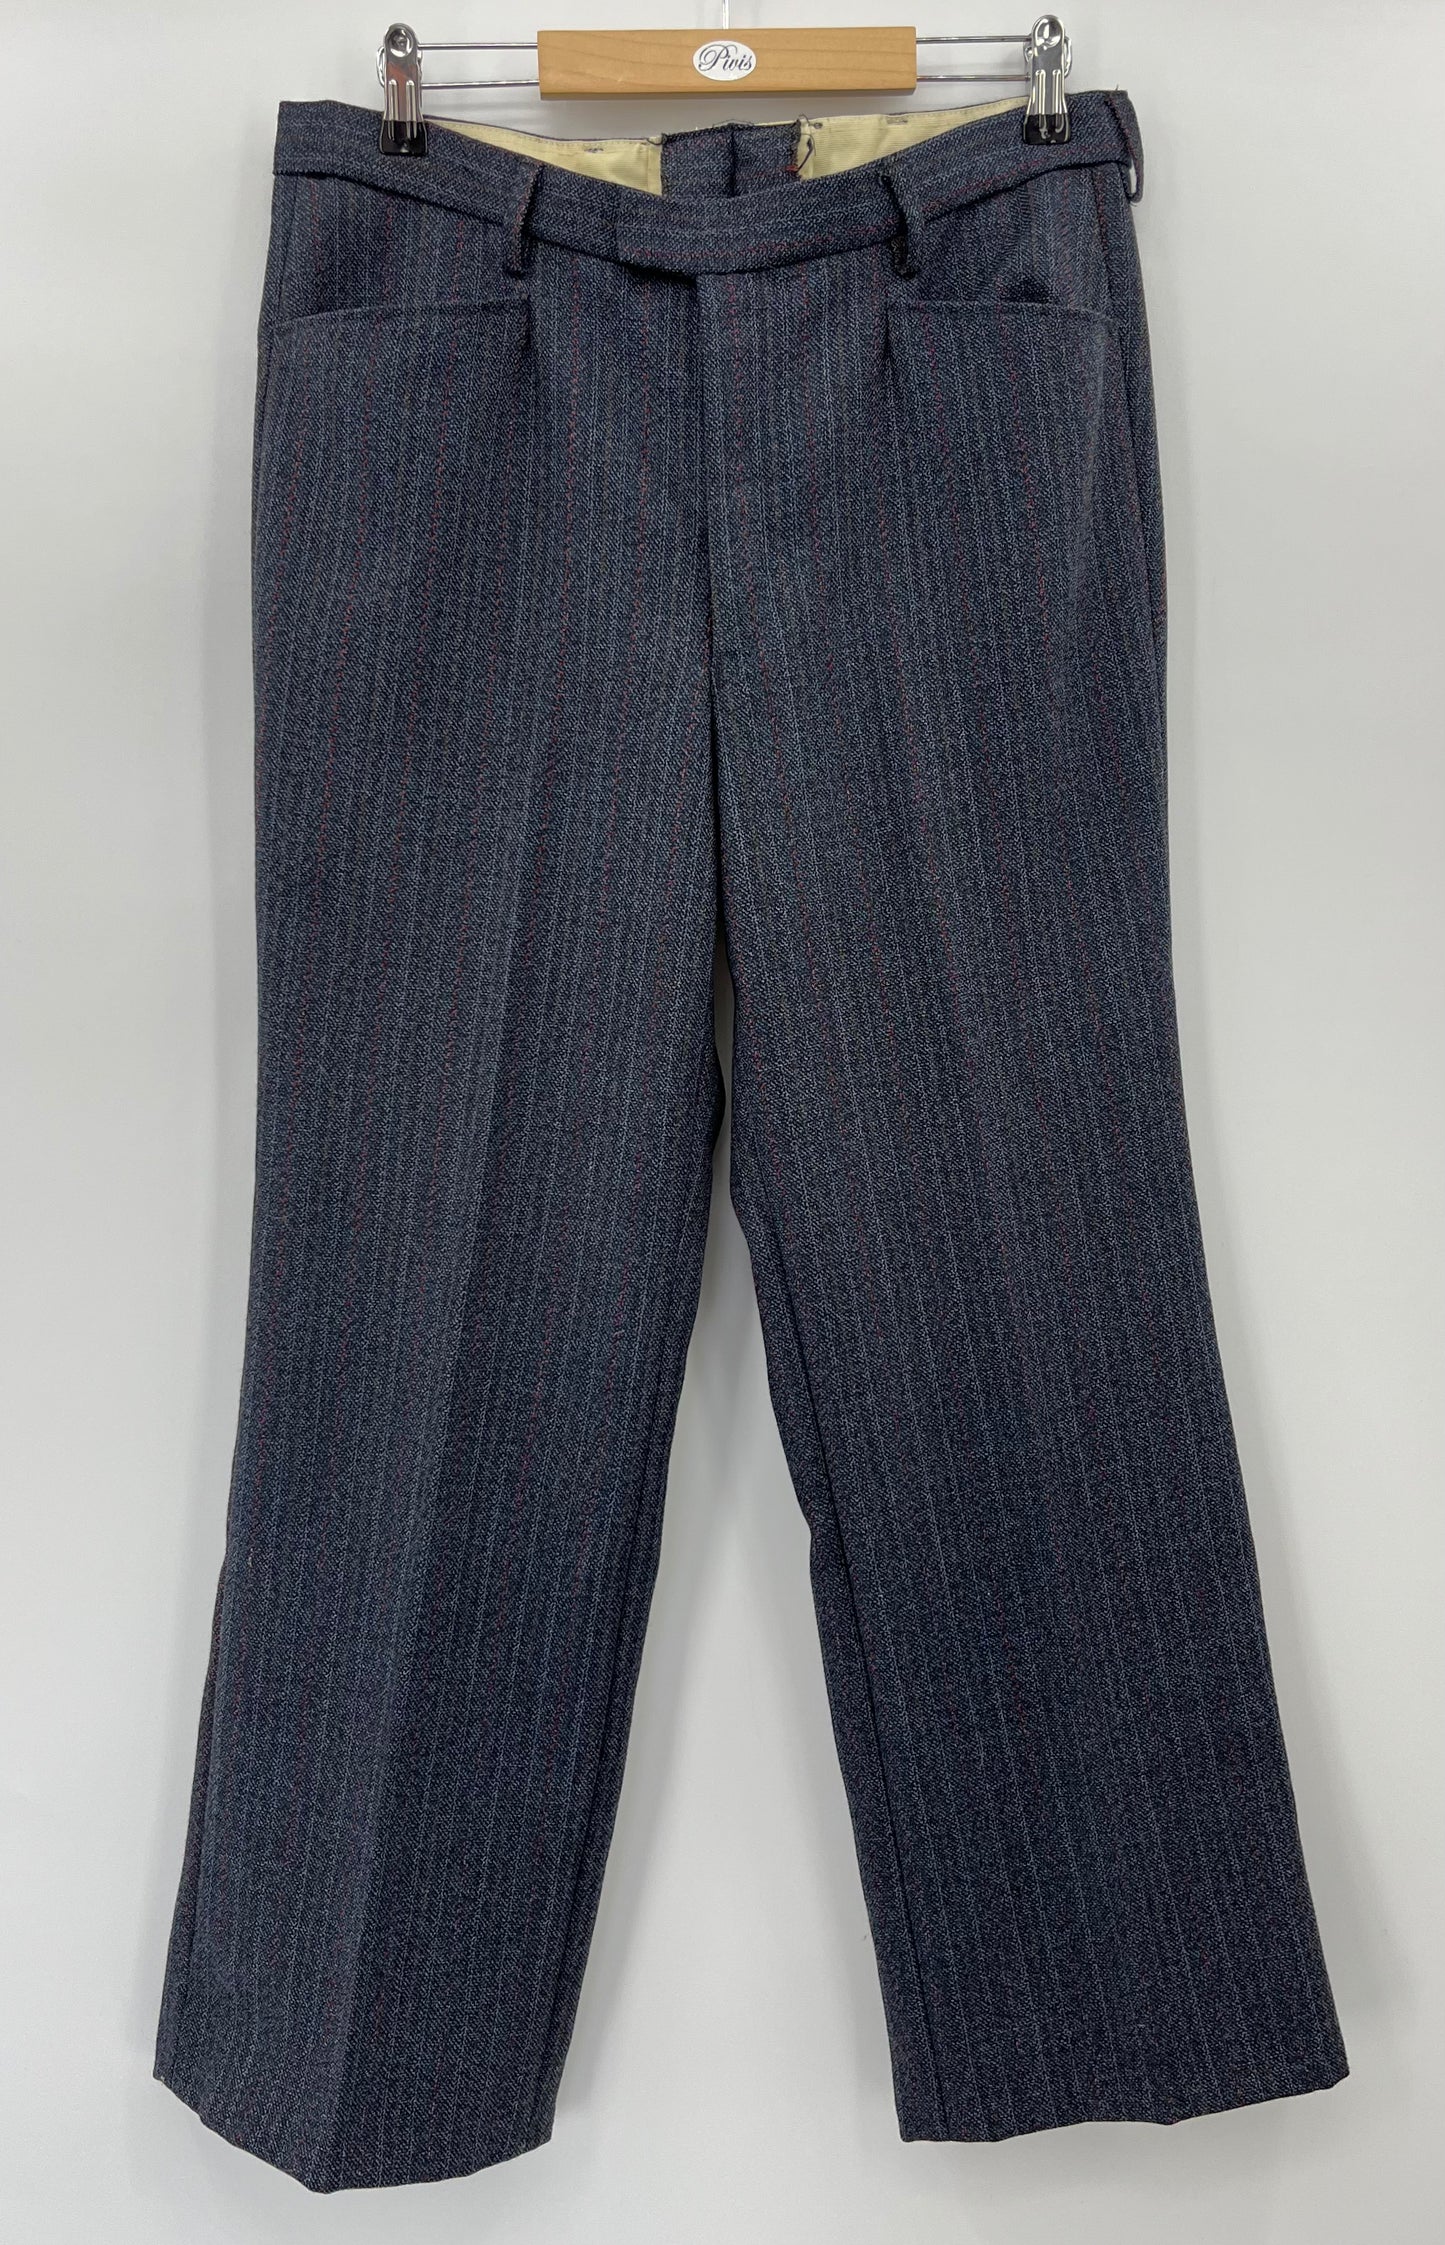 Hyvilla, tummansininen miesten puku, 70-luku, kokoarvio S